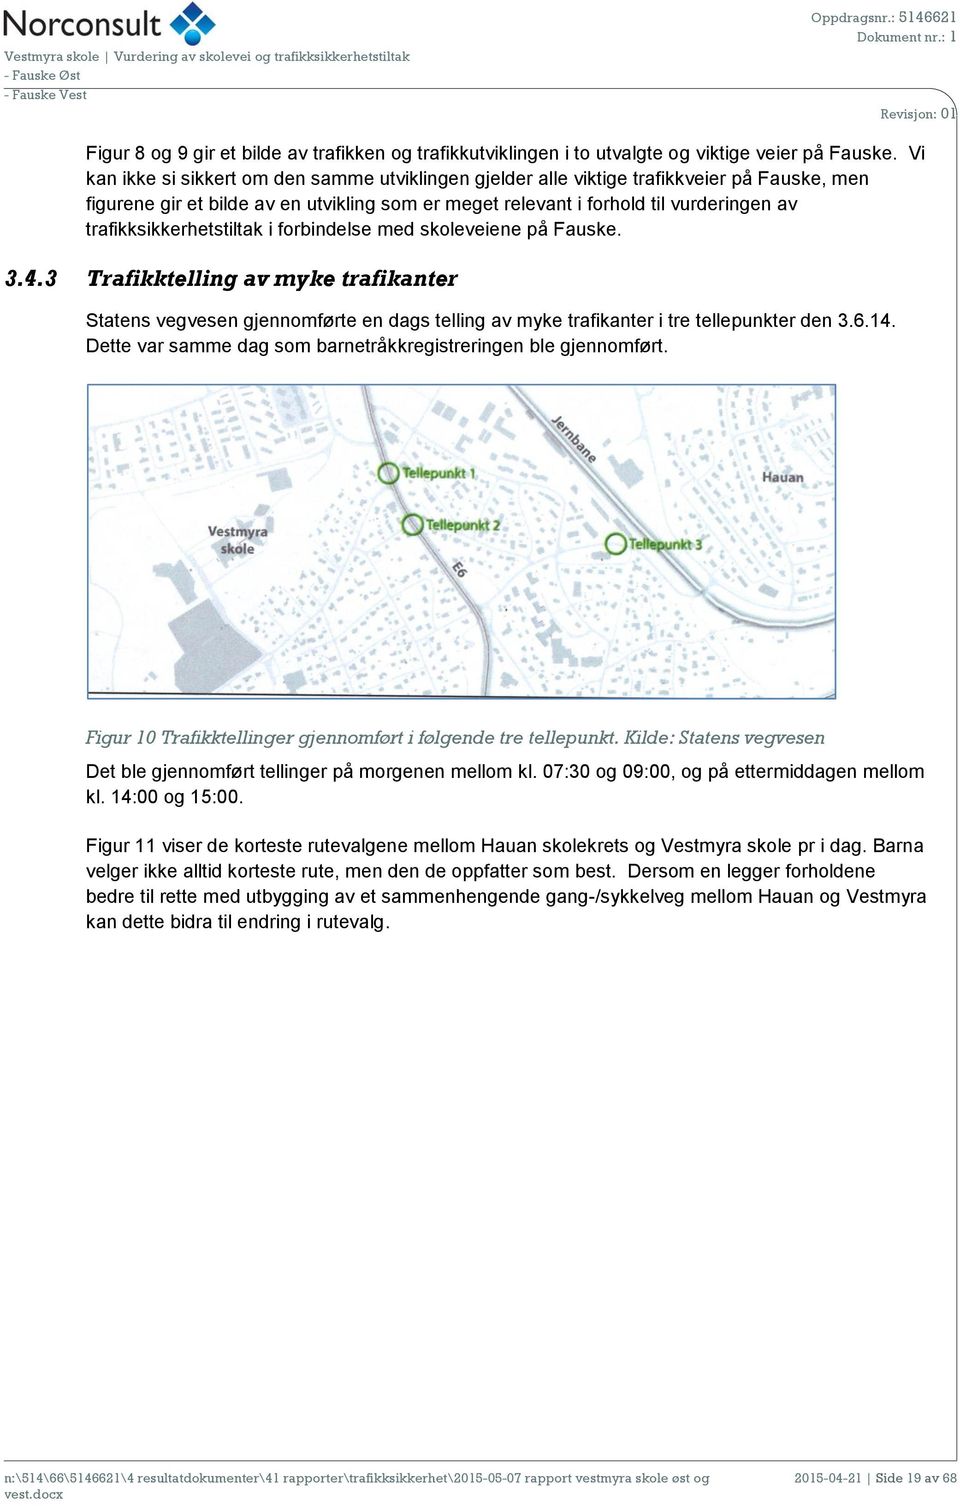 trafikksikkerhetstiltak i forbindelse med skoleveiene på Fauske. 3.4.3 Trafikktelling av myke trafikanter Statens vegvesen gjennomførte en dags telling av myke trafikanter i tre tellepunkter den 3.6.